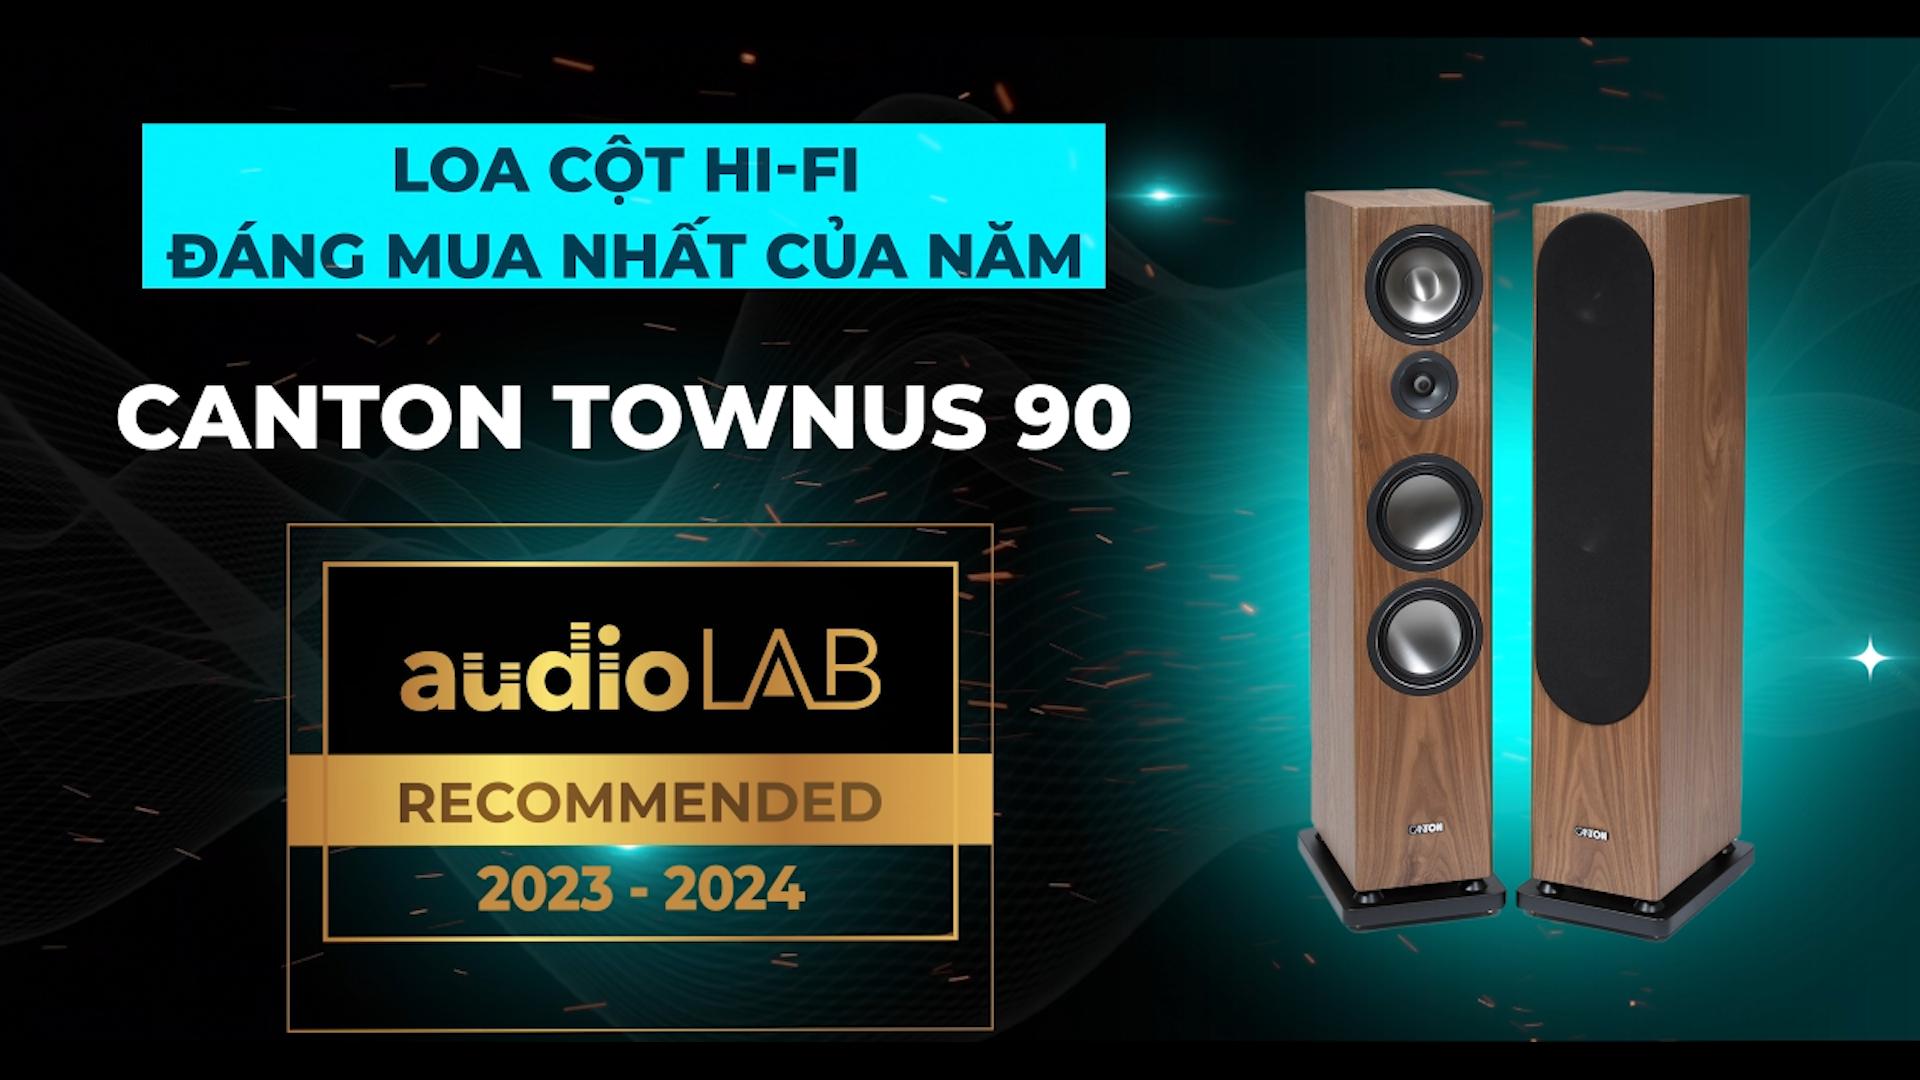 [Audio LAB Recommended] CANTON TOWNUS 90 - Loa cột Hi-Fi đáng mua nhất năm 2023-2024